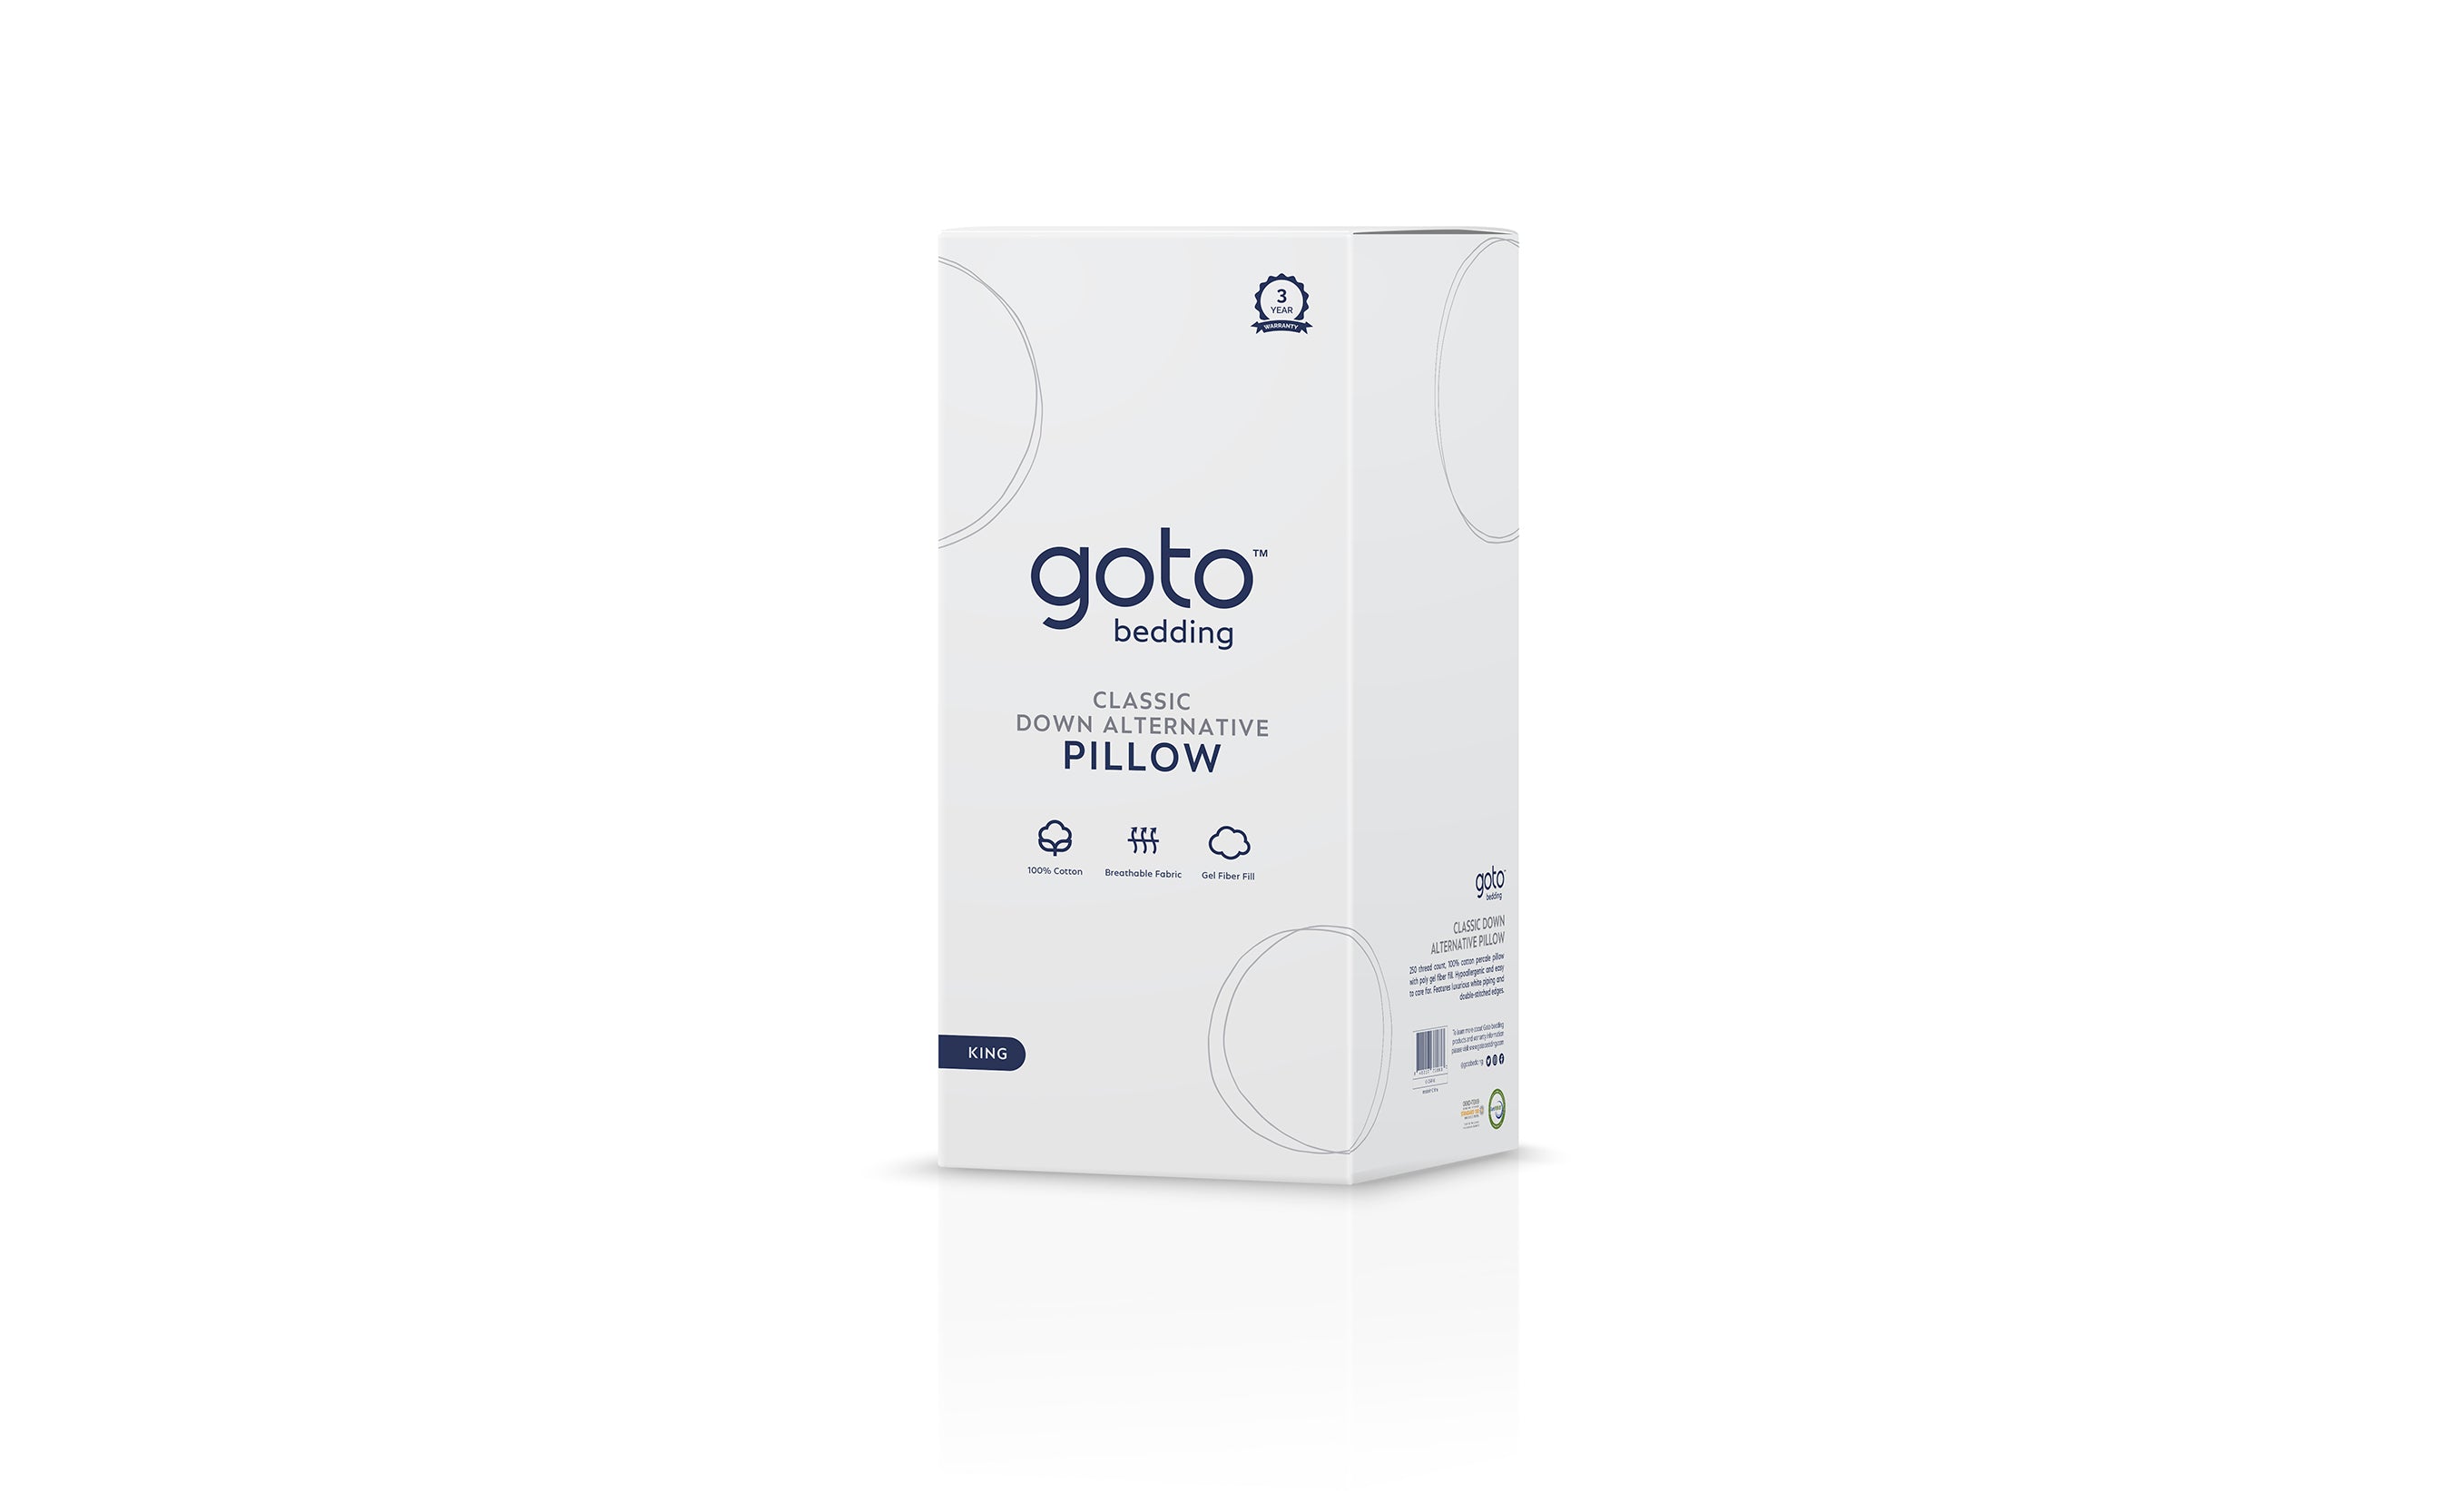 Goto® Down Alternative Pillow